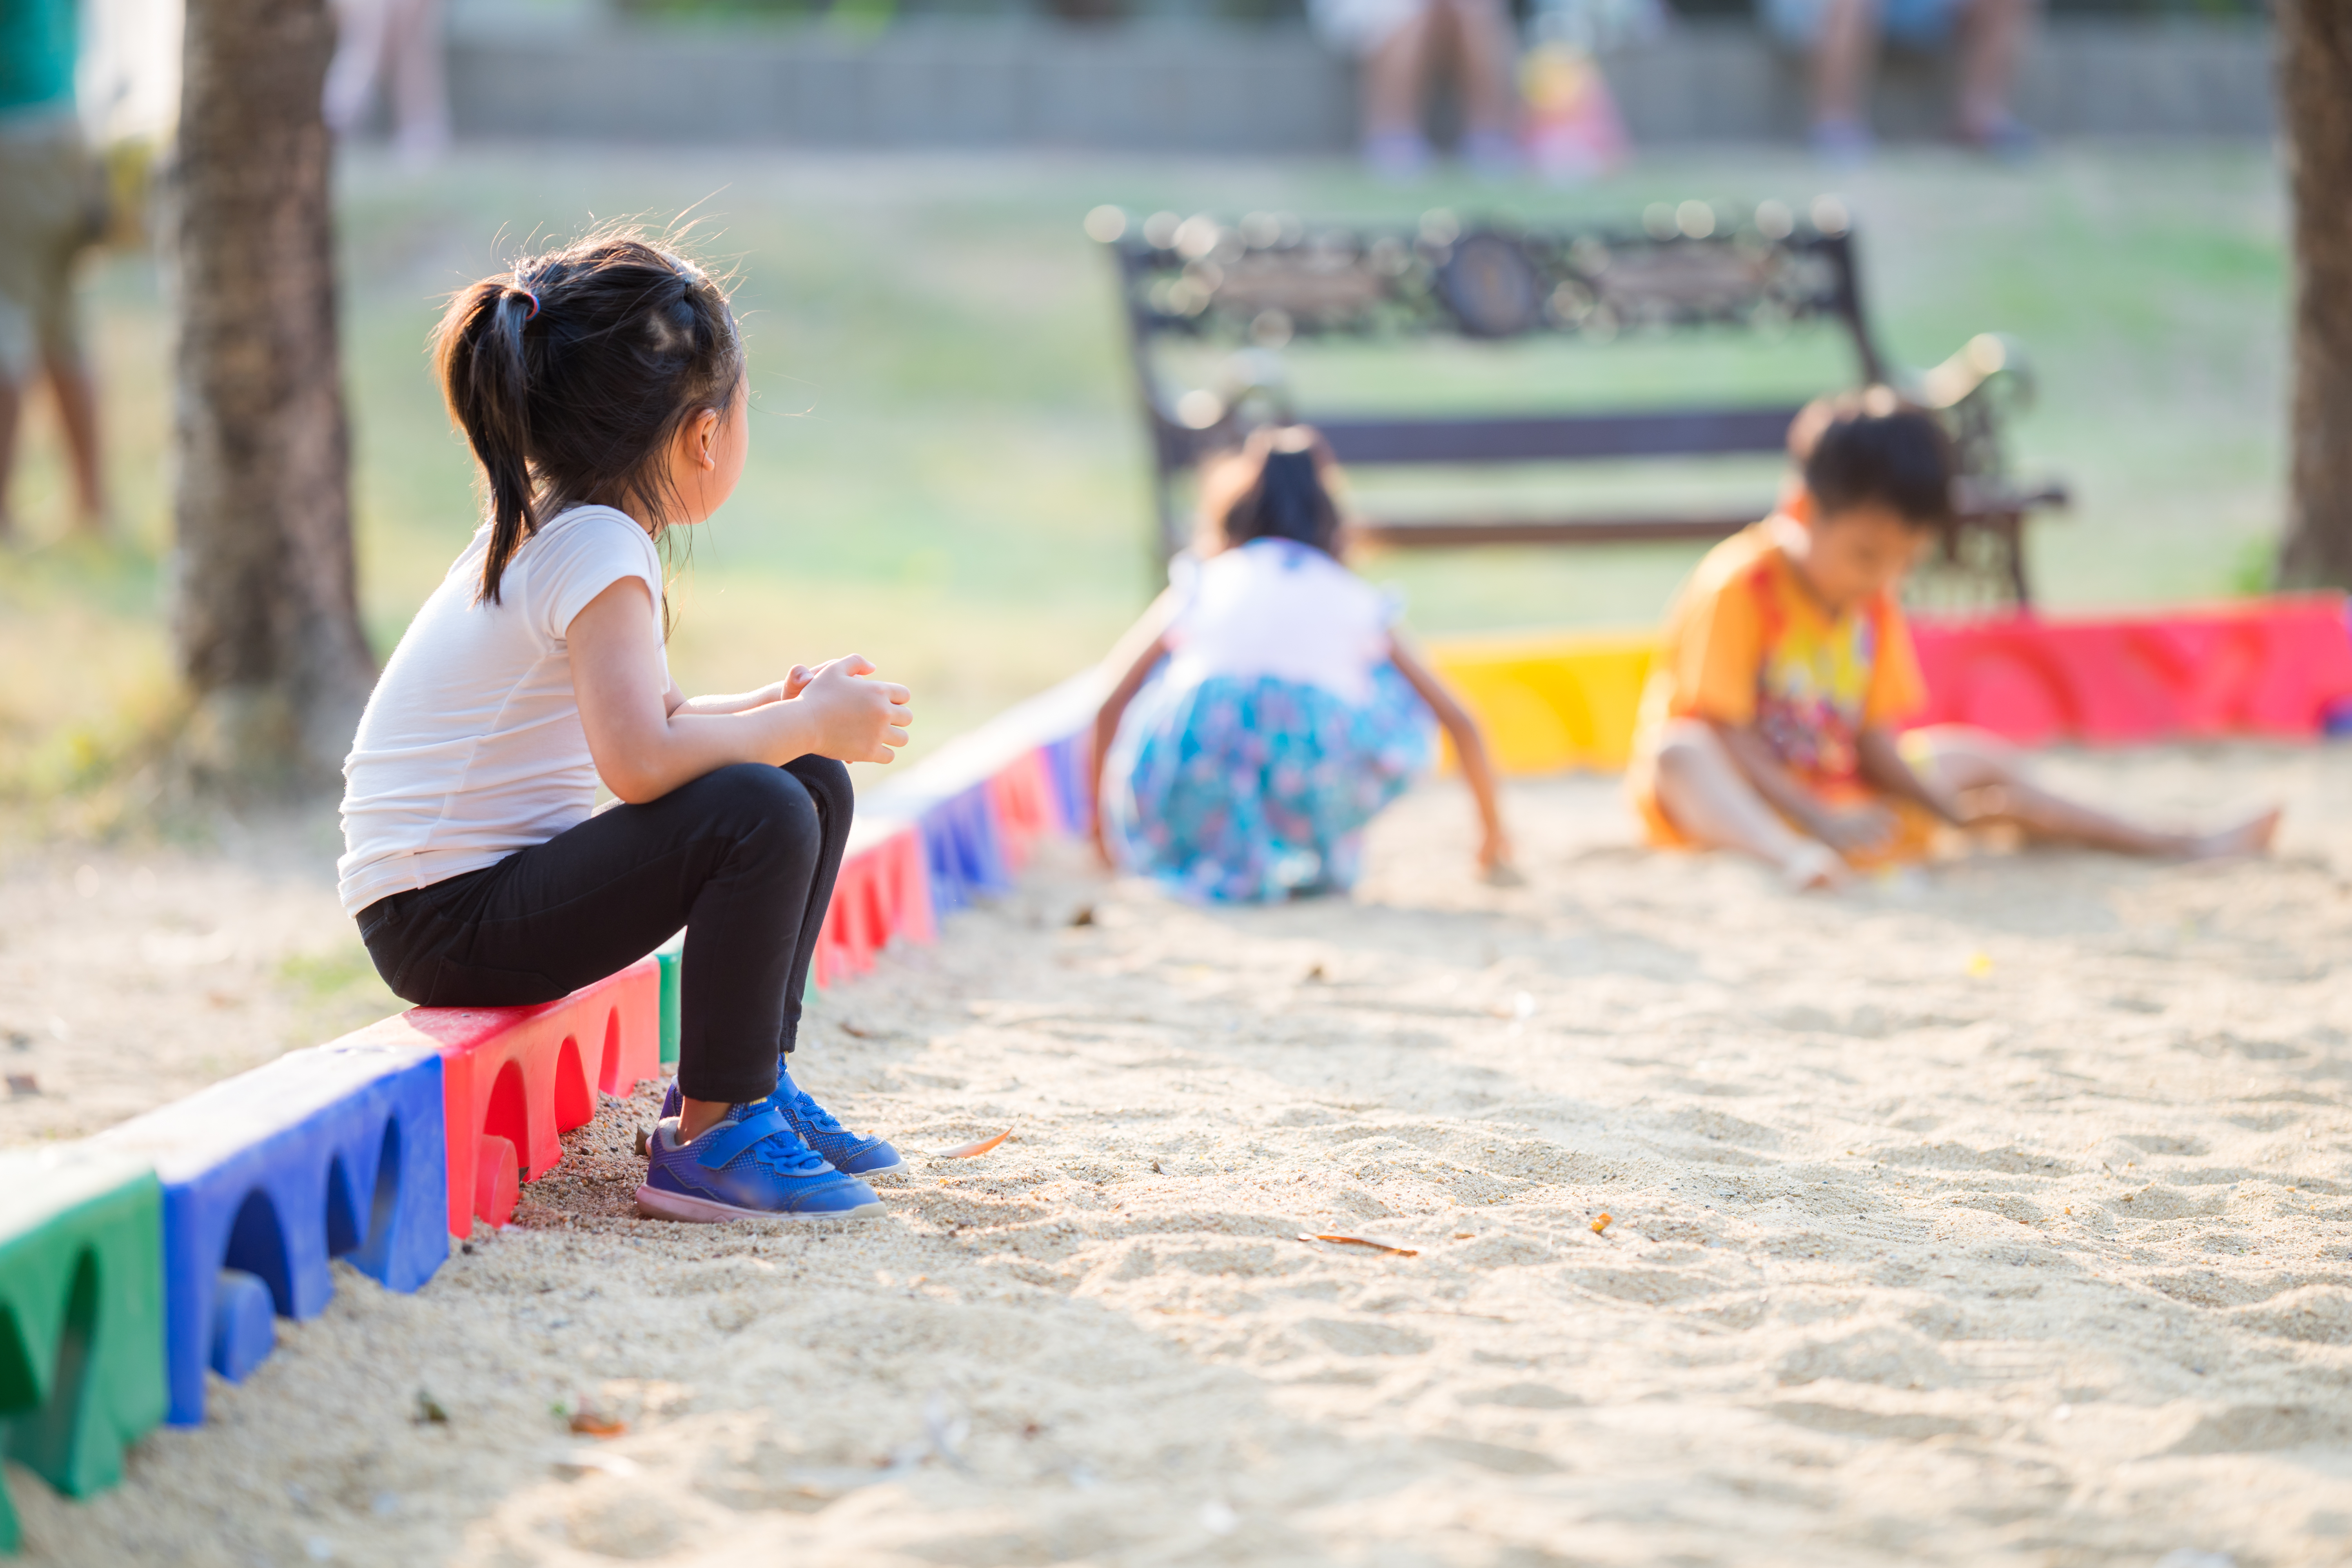 Kinder allein auf dem Spielplatz | Quelle: Shutterstock